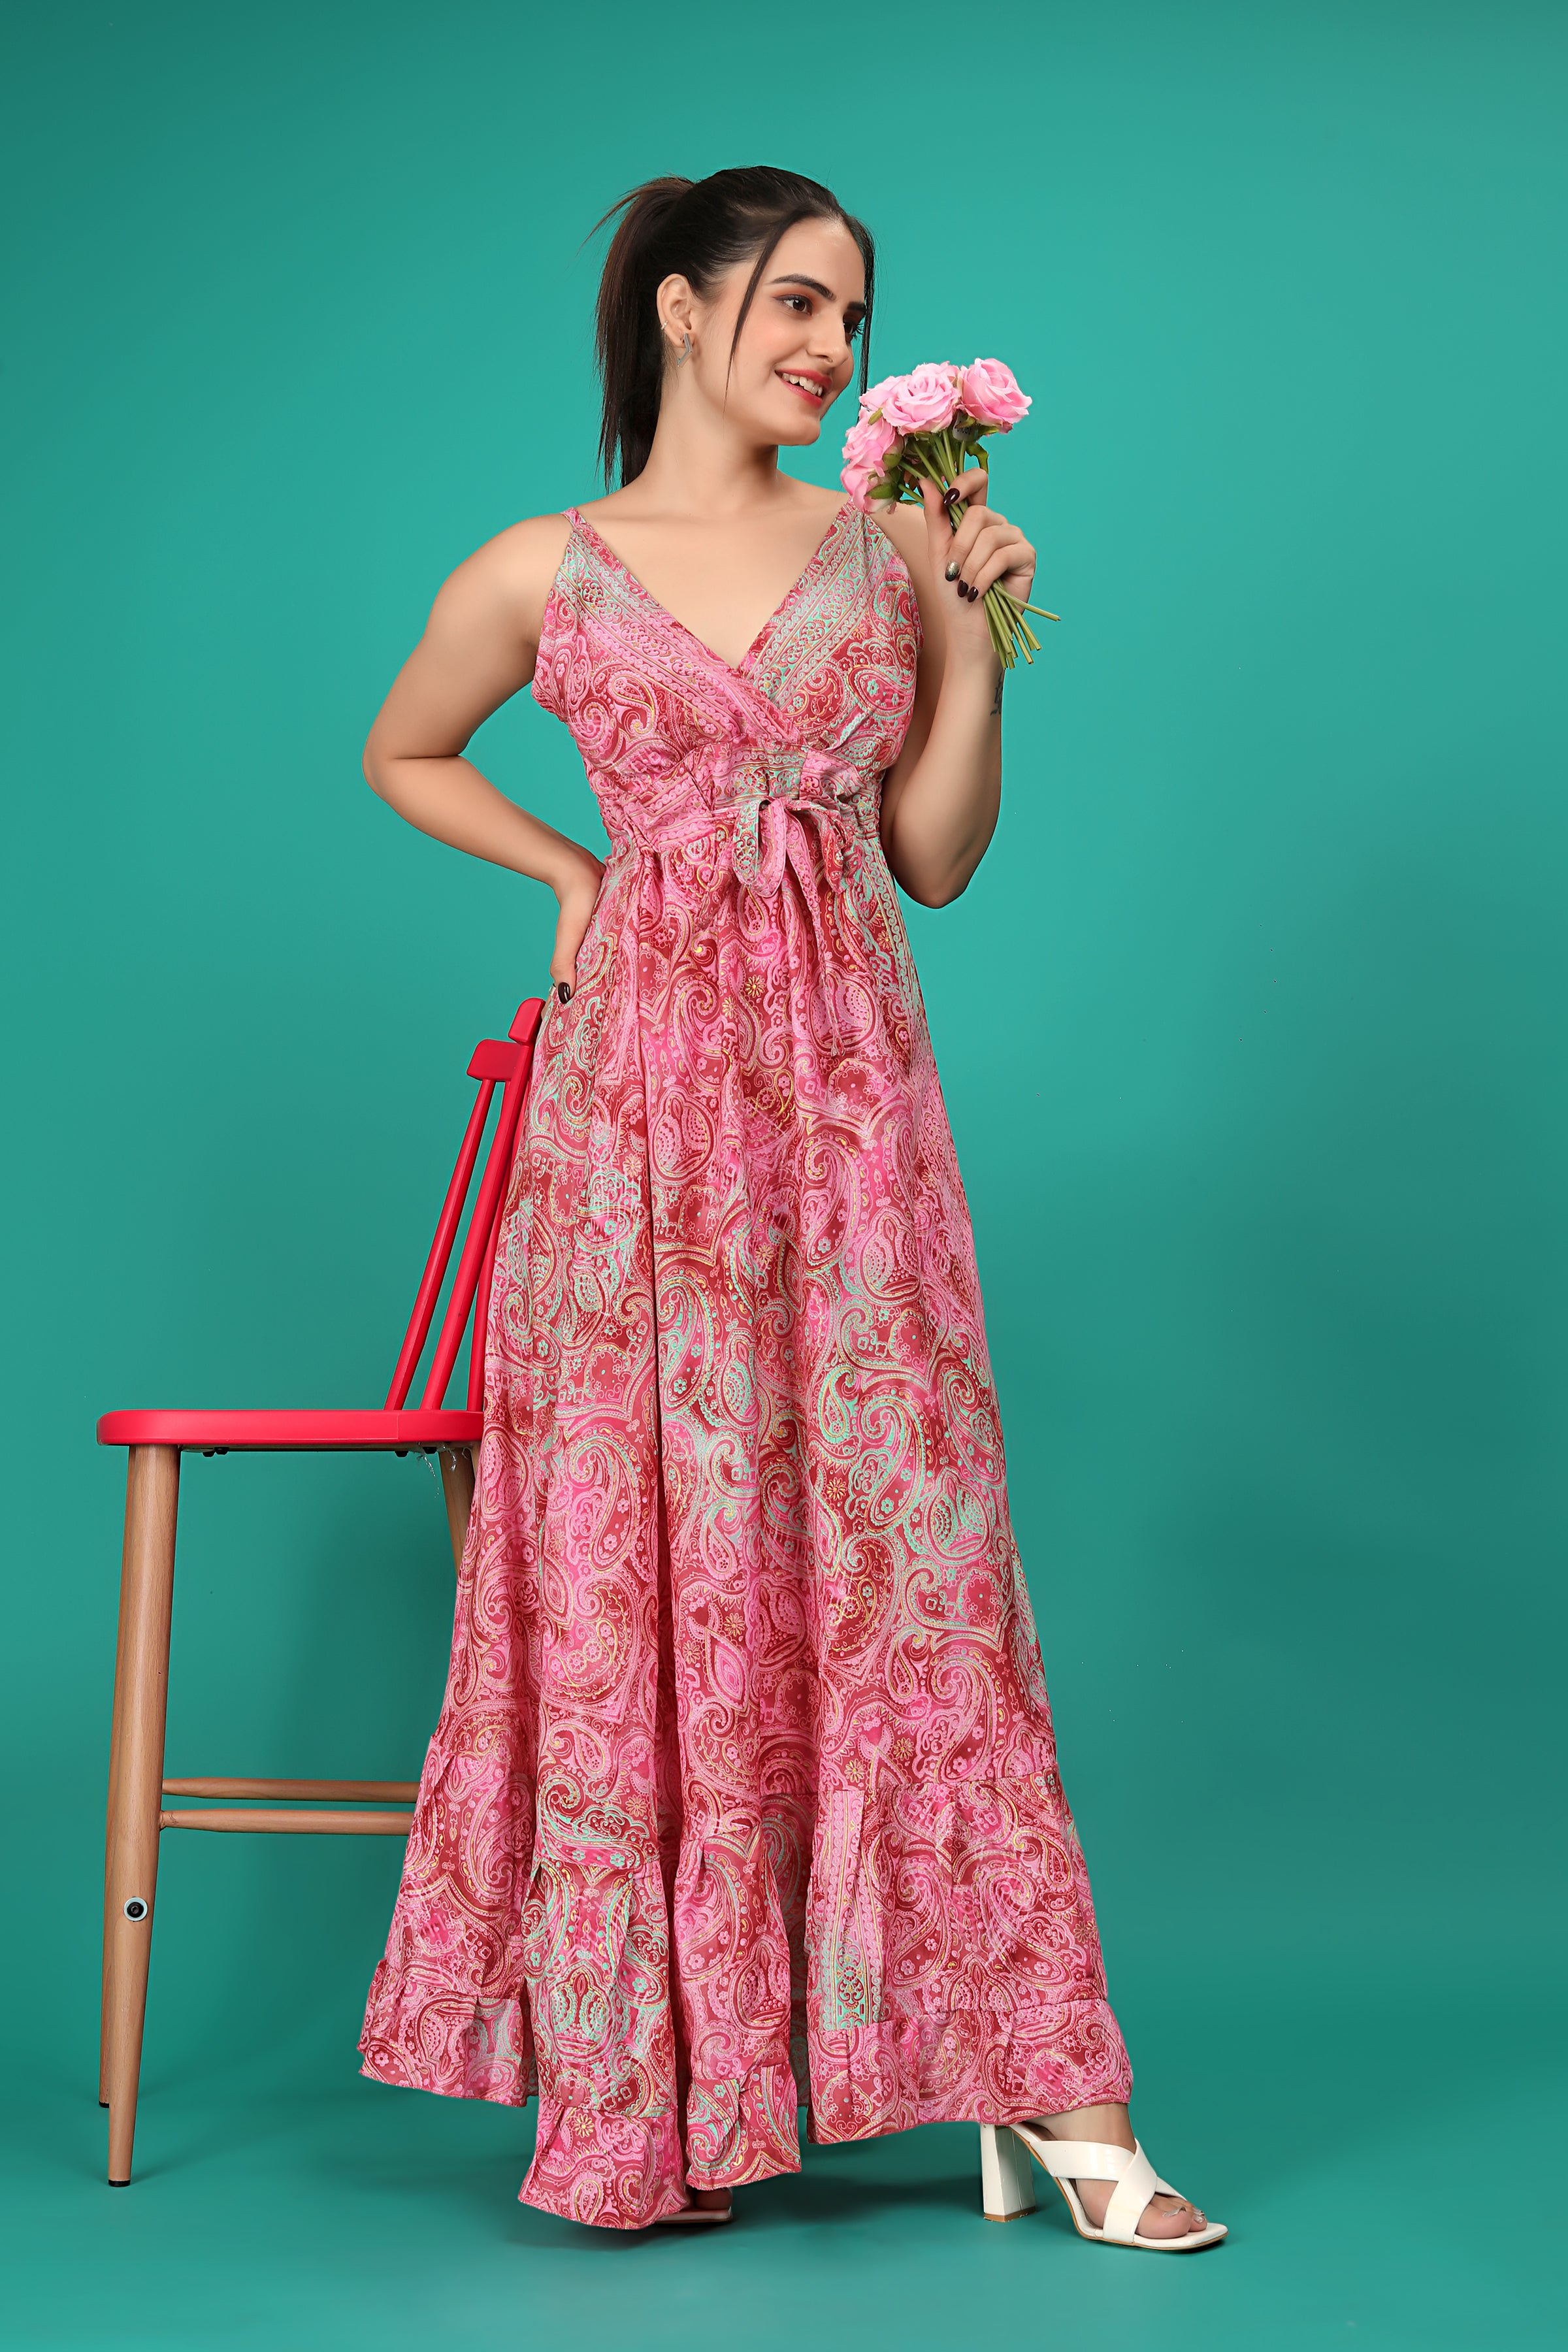 Pink Color Abstract Print Ruffled Long Dress